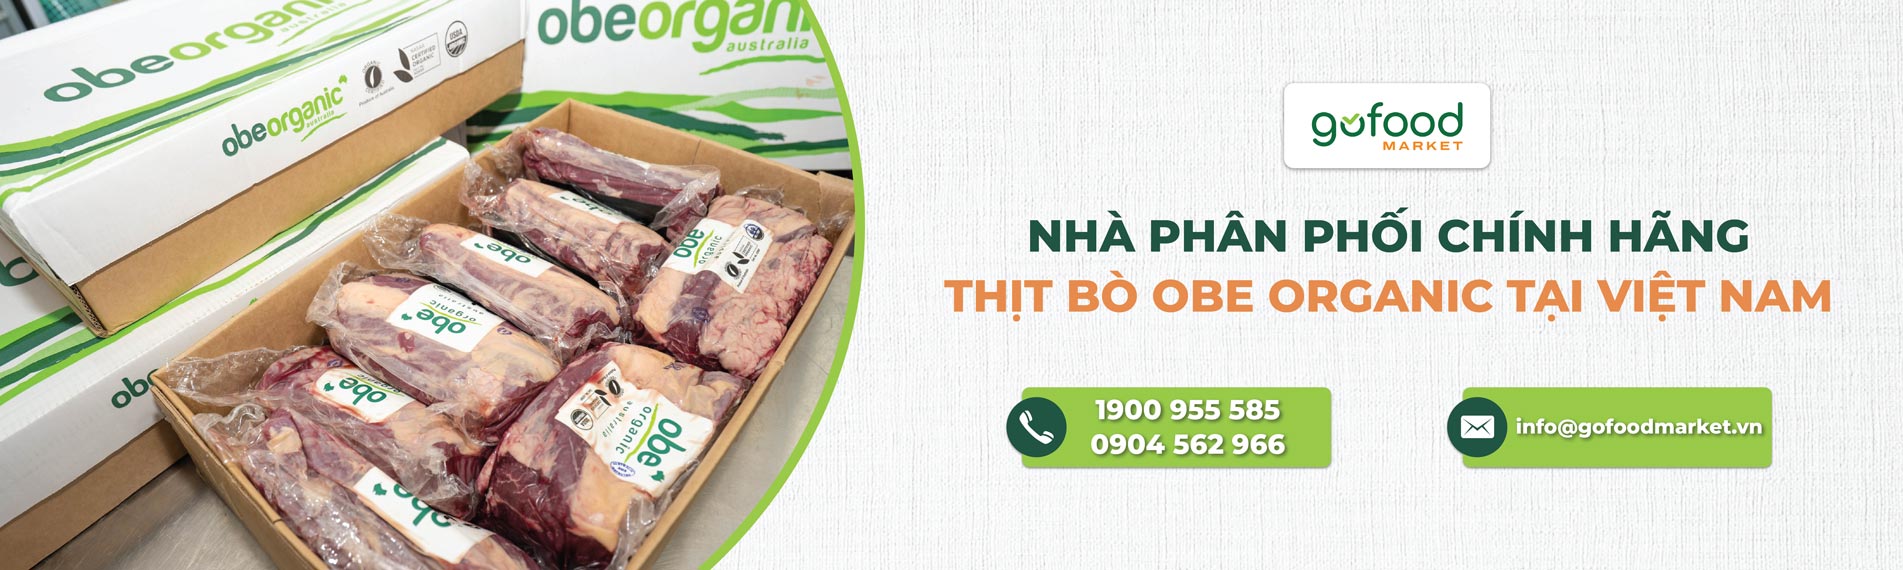 Gofood Market là nhà phân phối chính hãng bò Obe tại Việt Nam